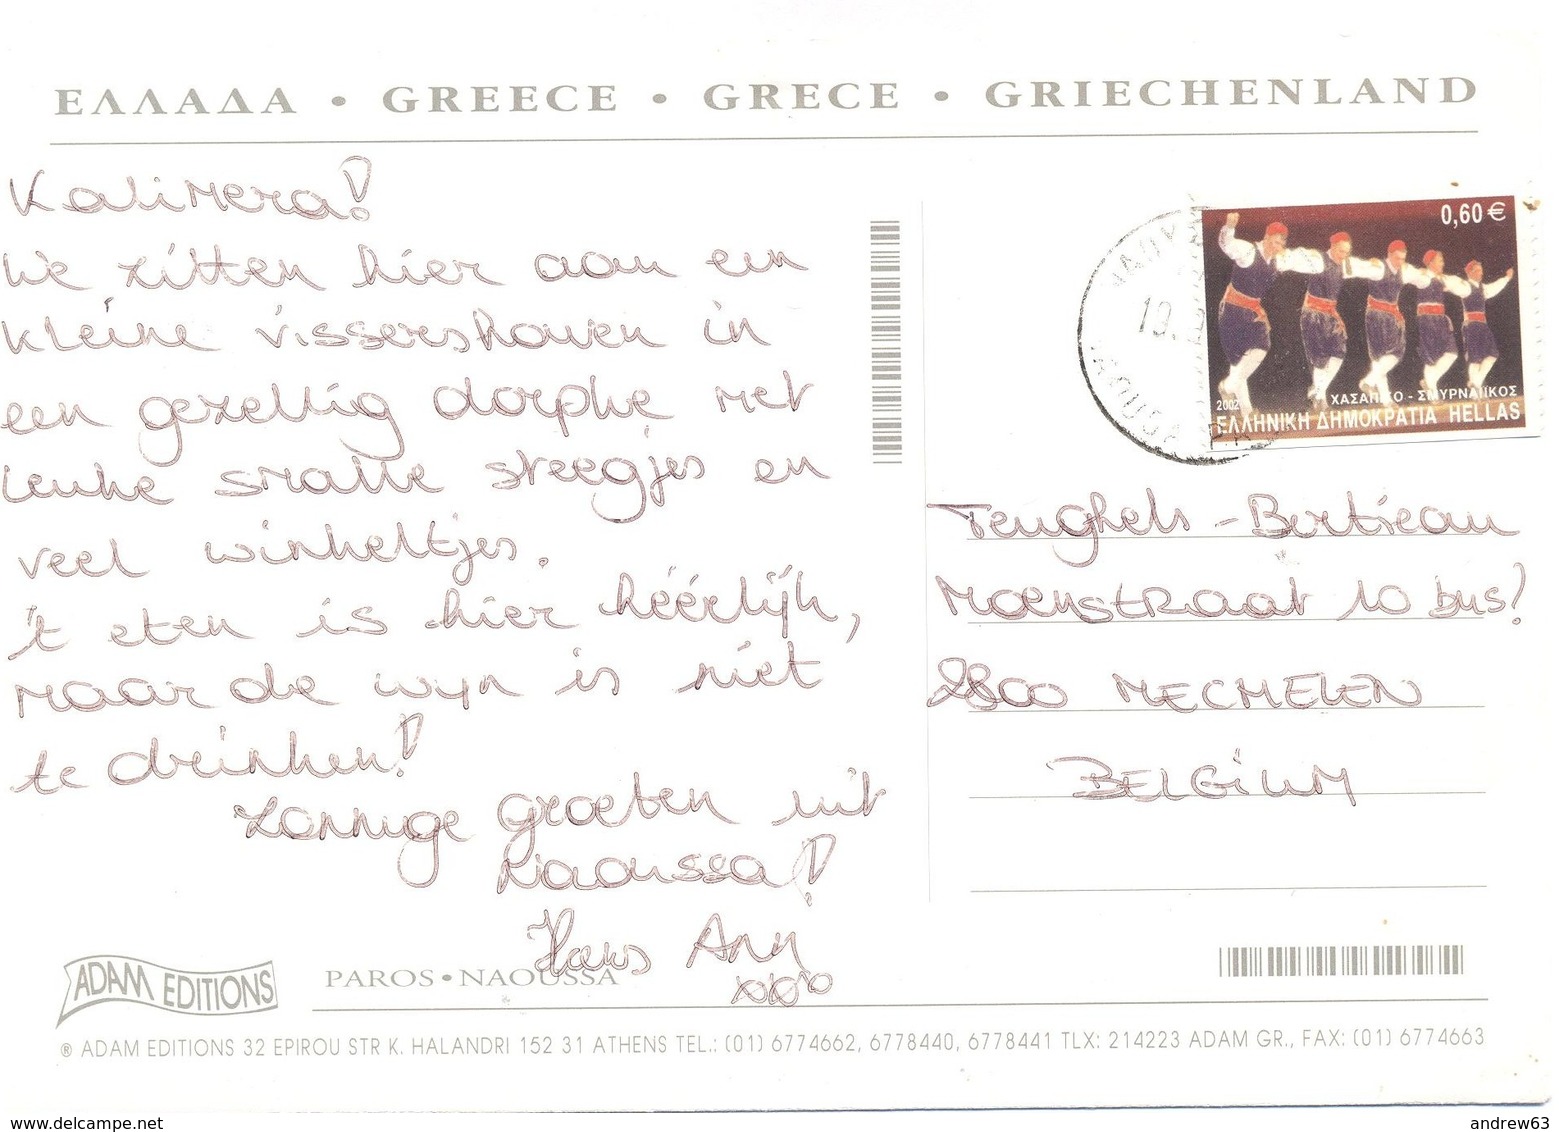 GRECIA - GREECE - GRECE - GRIECHENLAND - 2002?? - 60 - Paros Naoussa - Panorama - Viaggiata Da Naoussa Per Mechelen, Bel - Grecia